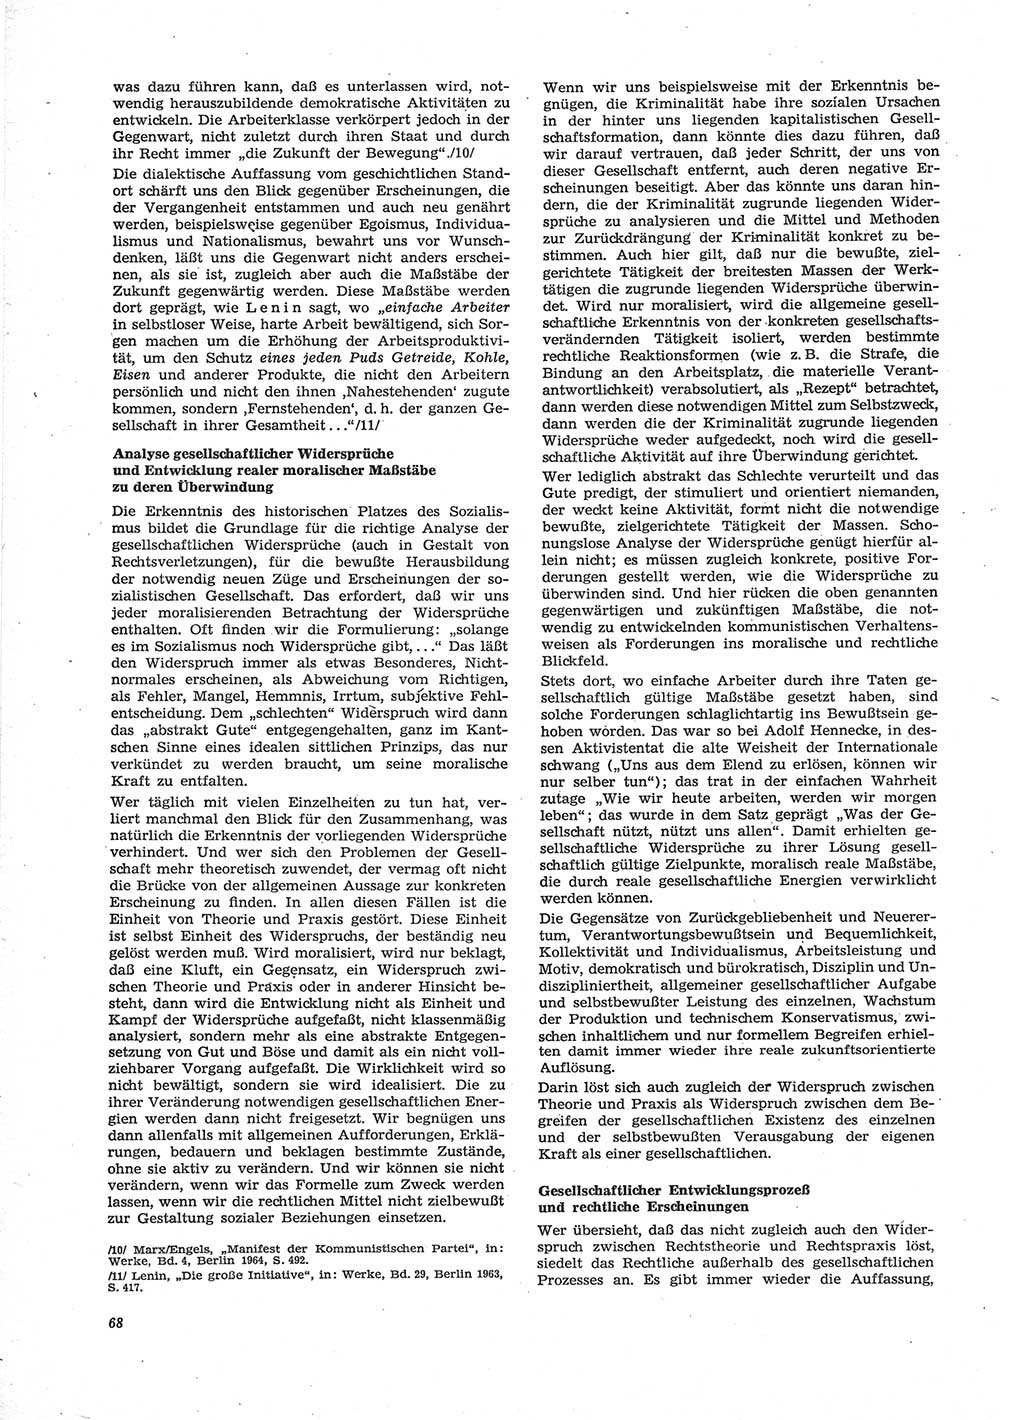 Neue Justiz (NJ), Zeitschrift für Recht und Rechtswissenschaft [Deutsche Demokratische Republik (DDR)], 28. Jahrgang 1974, Seite 68 (NJ DDR 1974, S. 68)